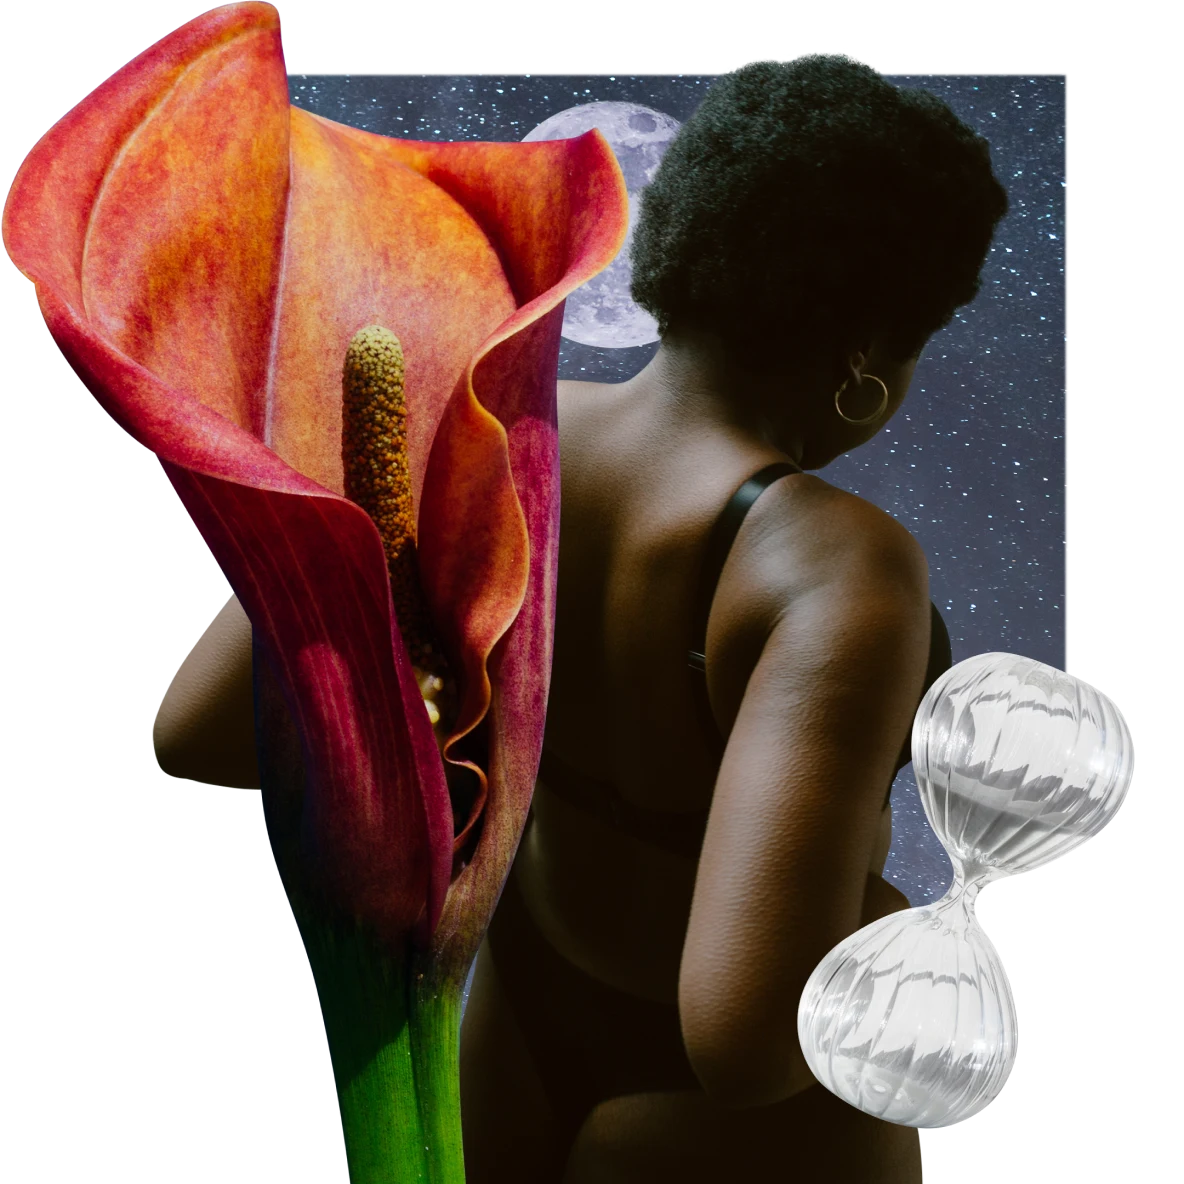 Eine Calla-Lilie auf der linken Seite. Auf der rechten Seite eine Schwarze Frau, die mit dem Rücken zur Kamera steht, im Hintergrund ein Nachthimmel mit Vollmond. Unten rechts eine Sanduhr.